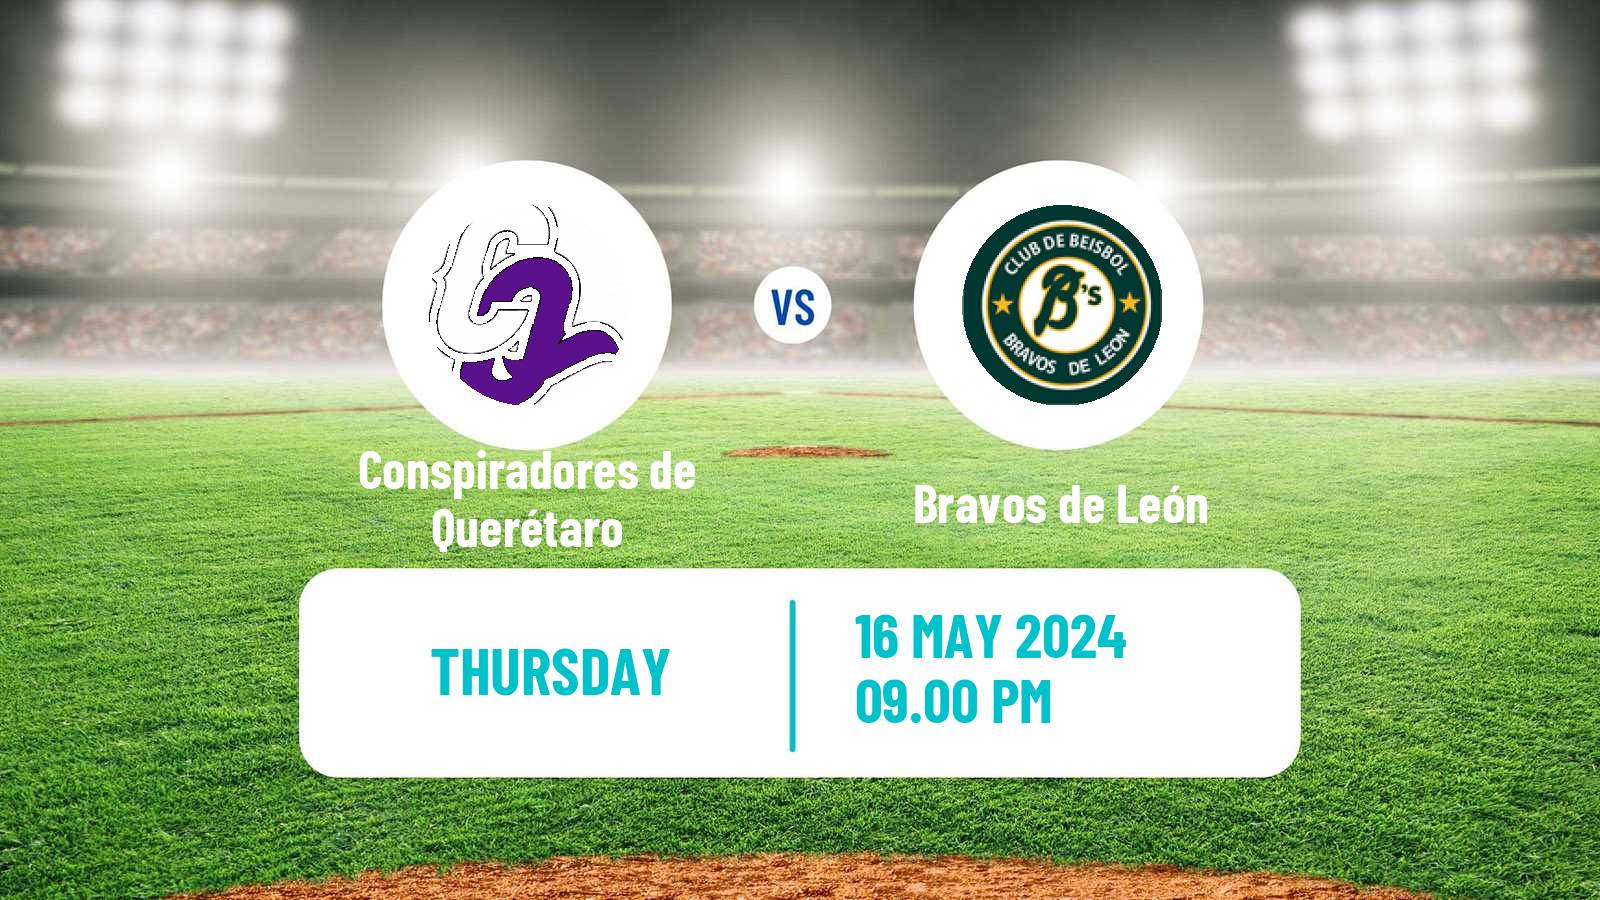 Baseball LMB Conspiradores de Querétaro - Bravos de León